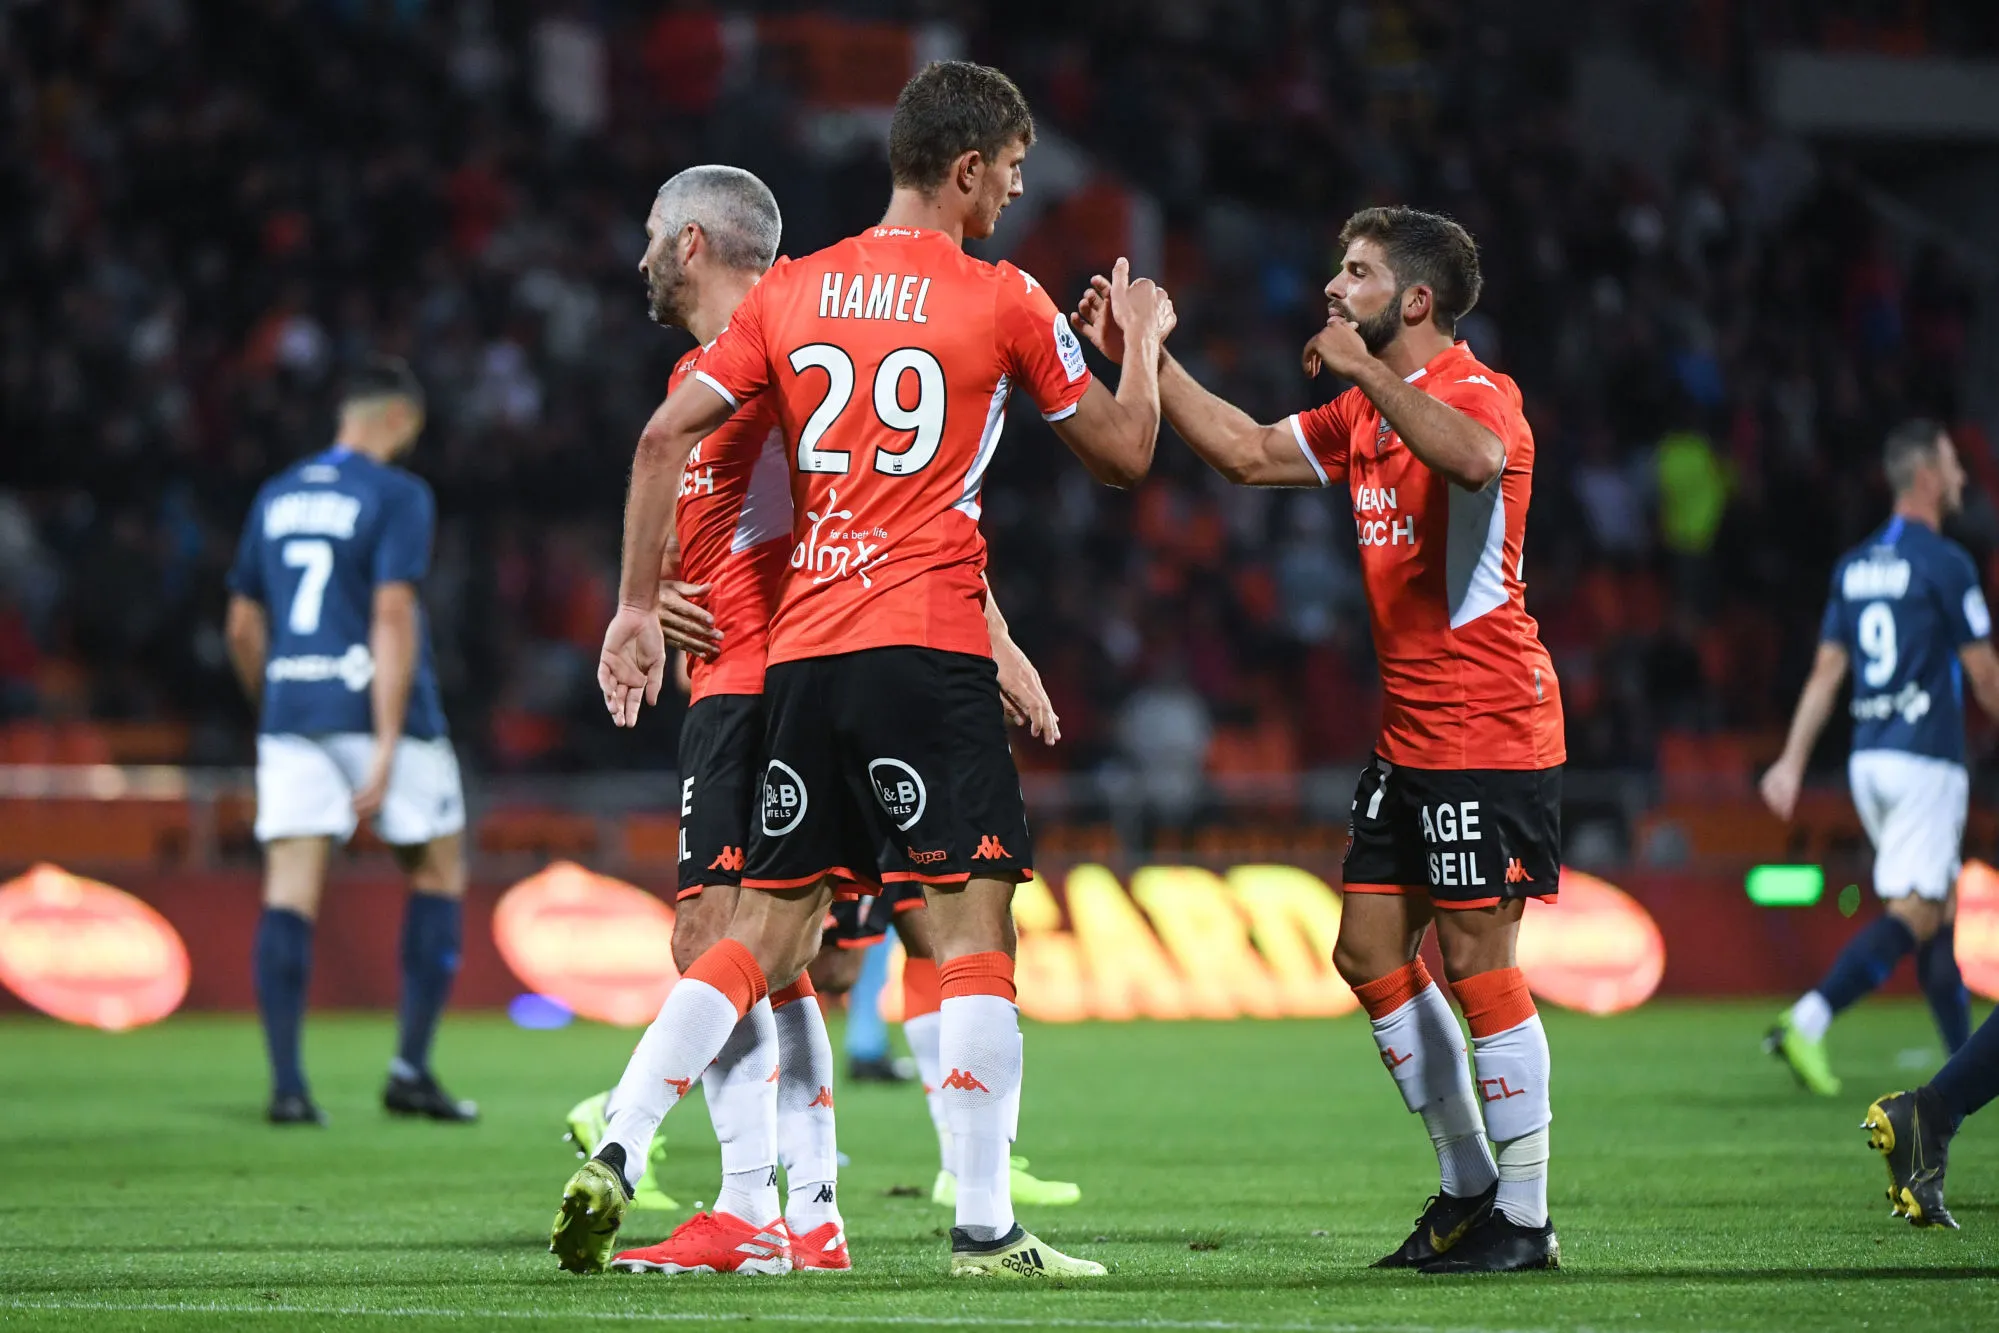 Pronostic Lorient Chambly : Analyse, prono et cotes du match de Ligue 2